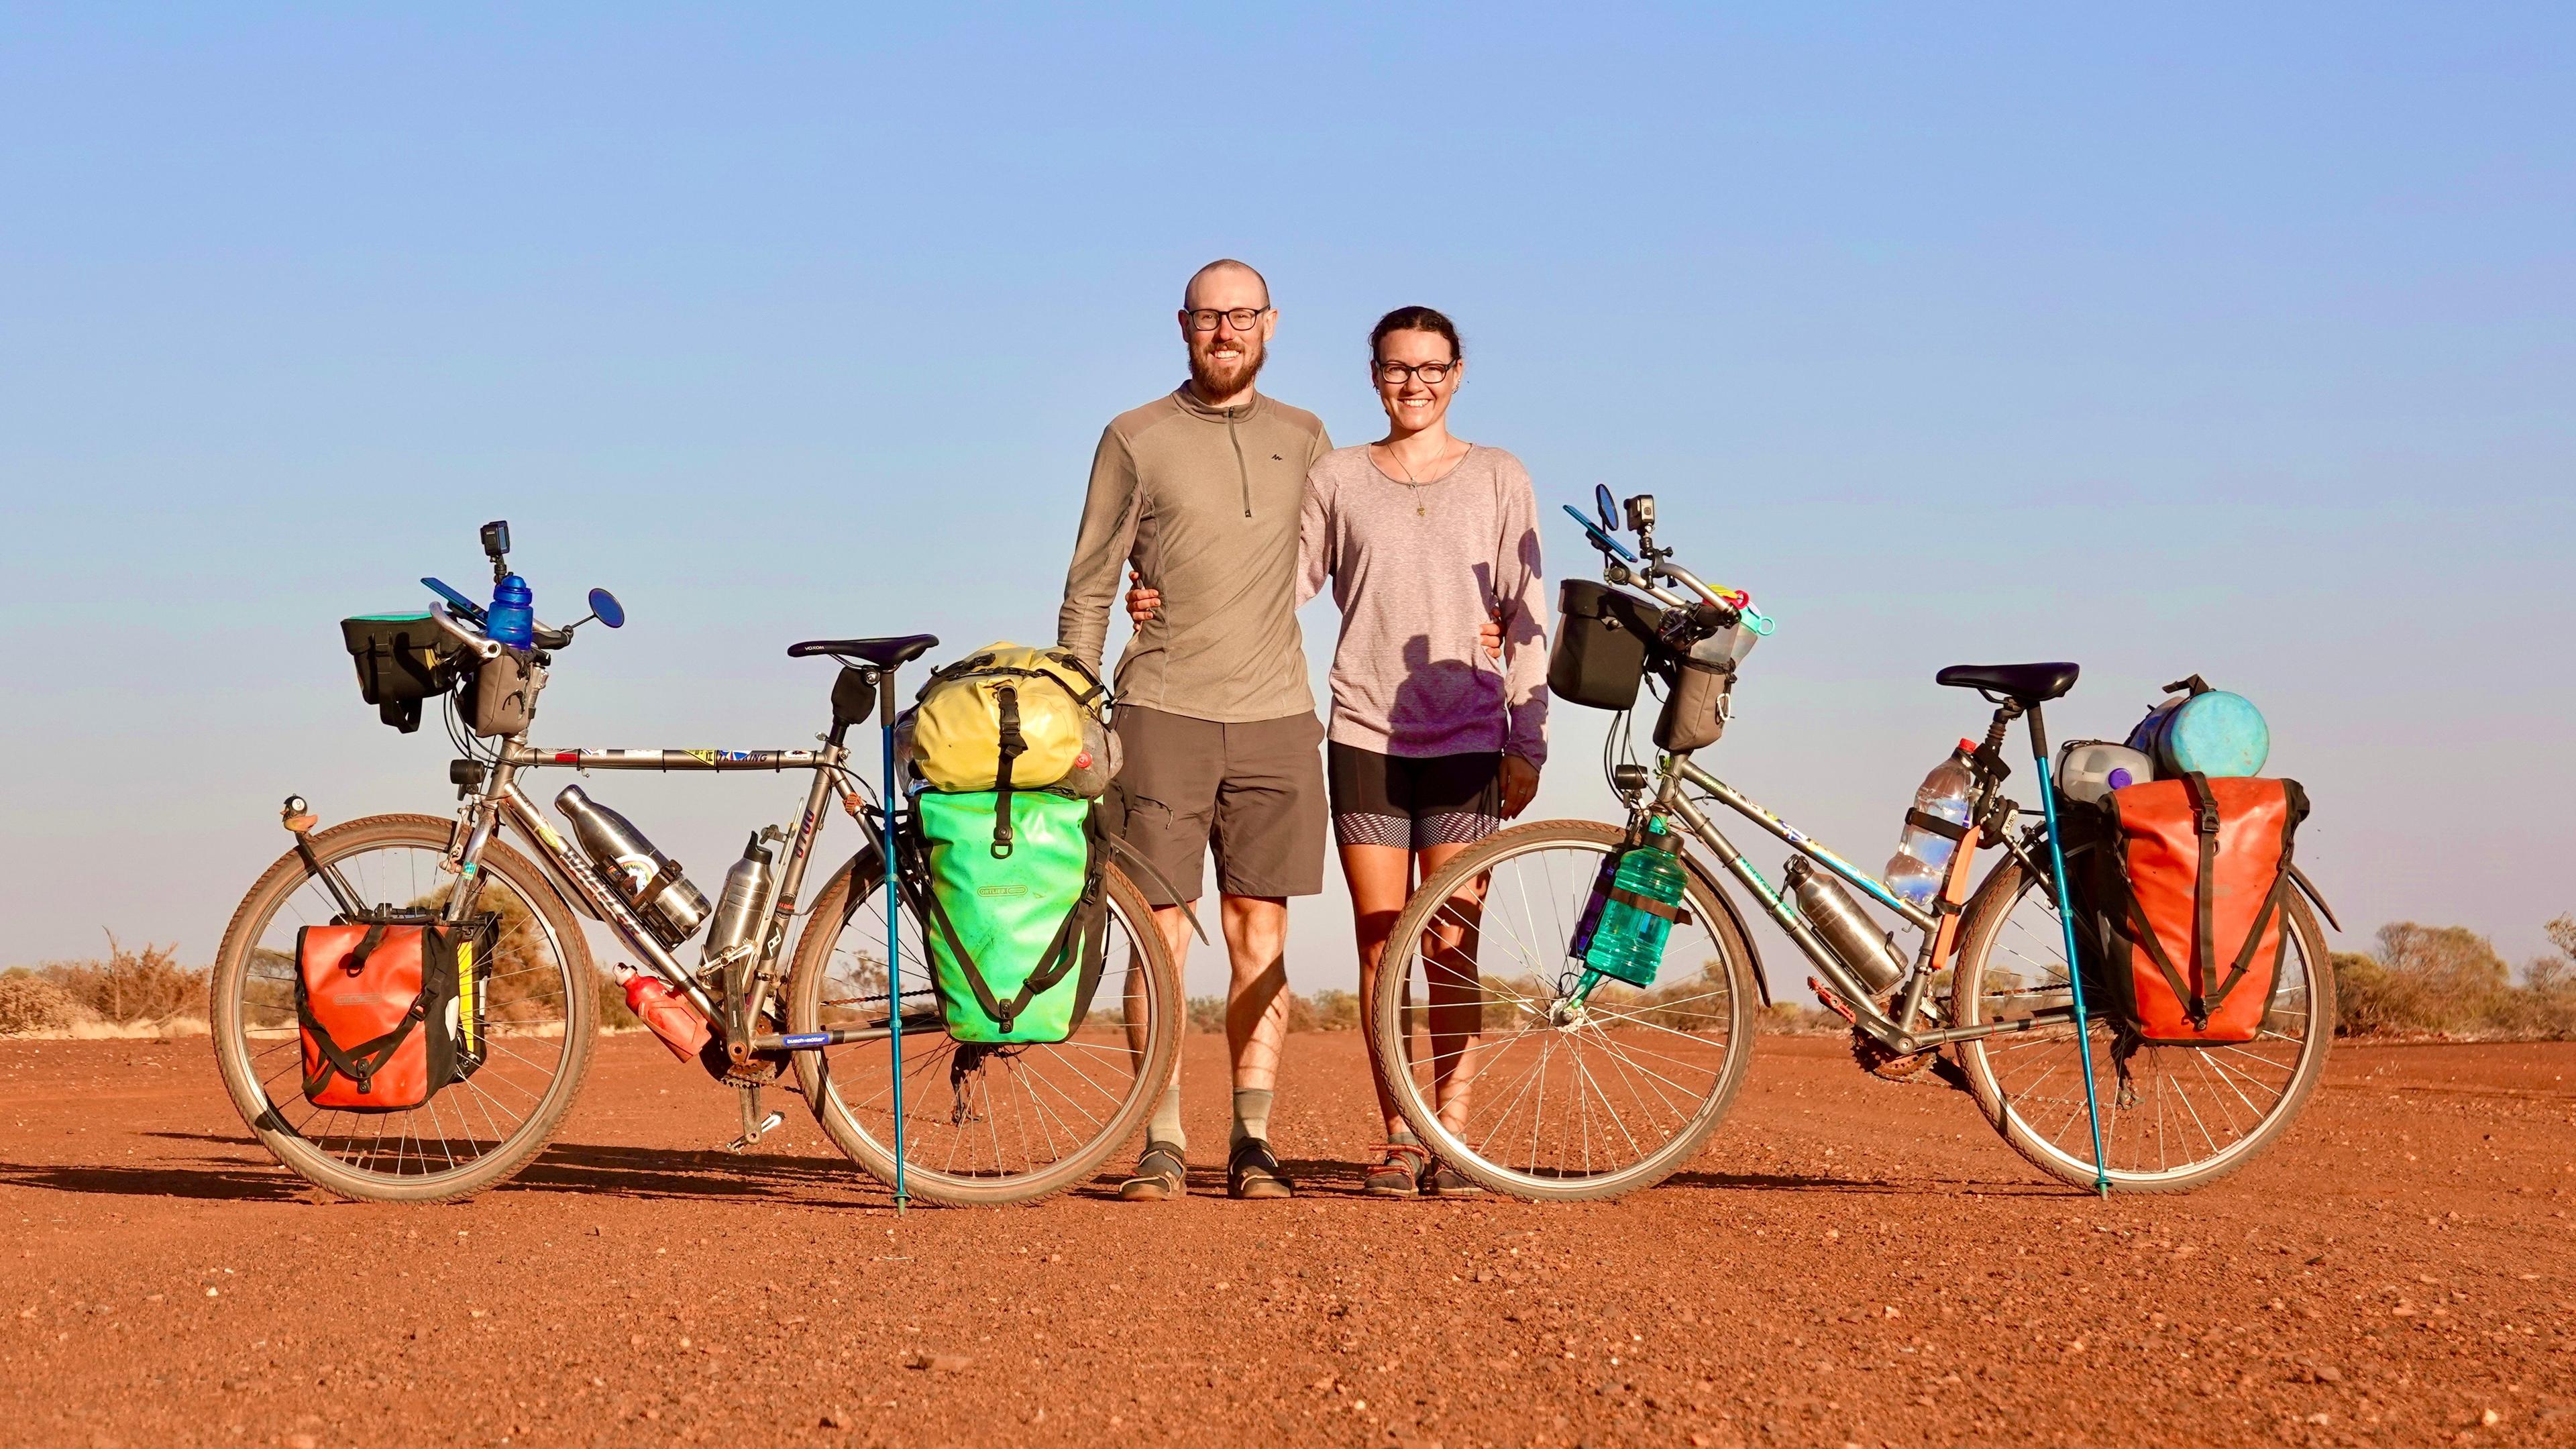 Tobi und Louisa stehen zwischen ihren Fahrrädern in einer kargen Landschaft mit blauem Himmel.